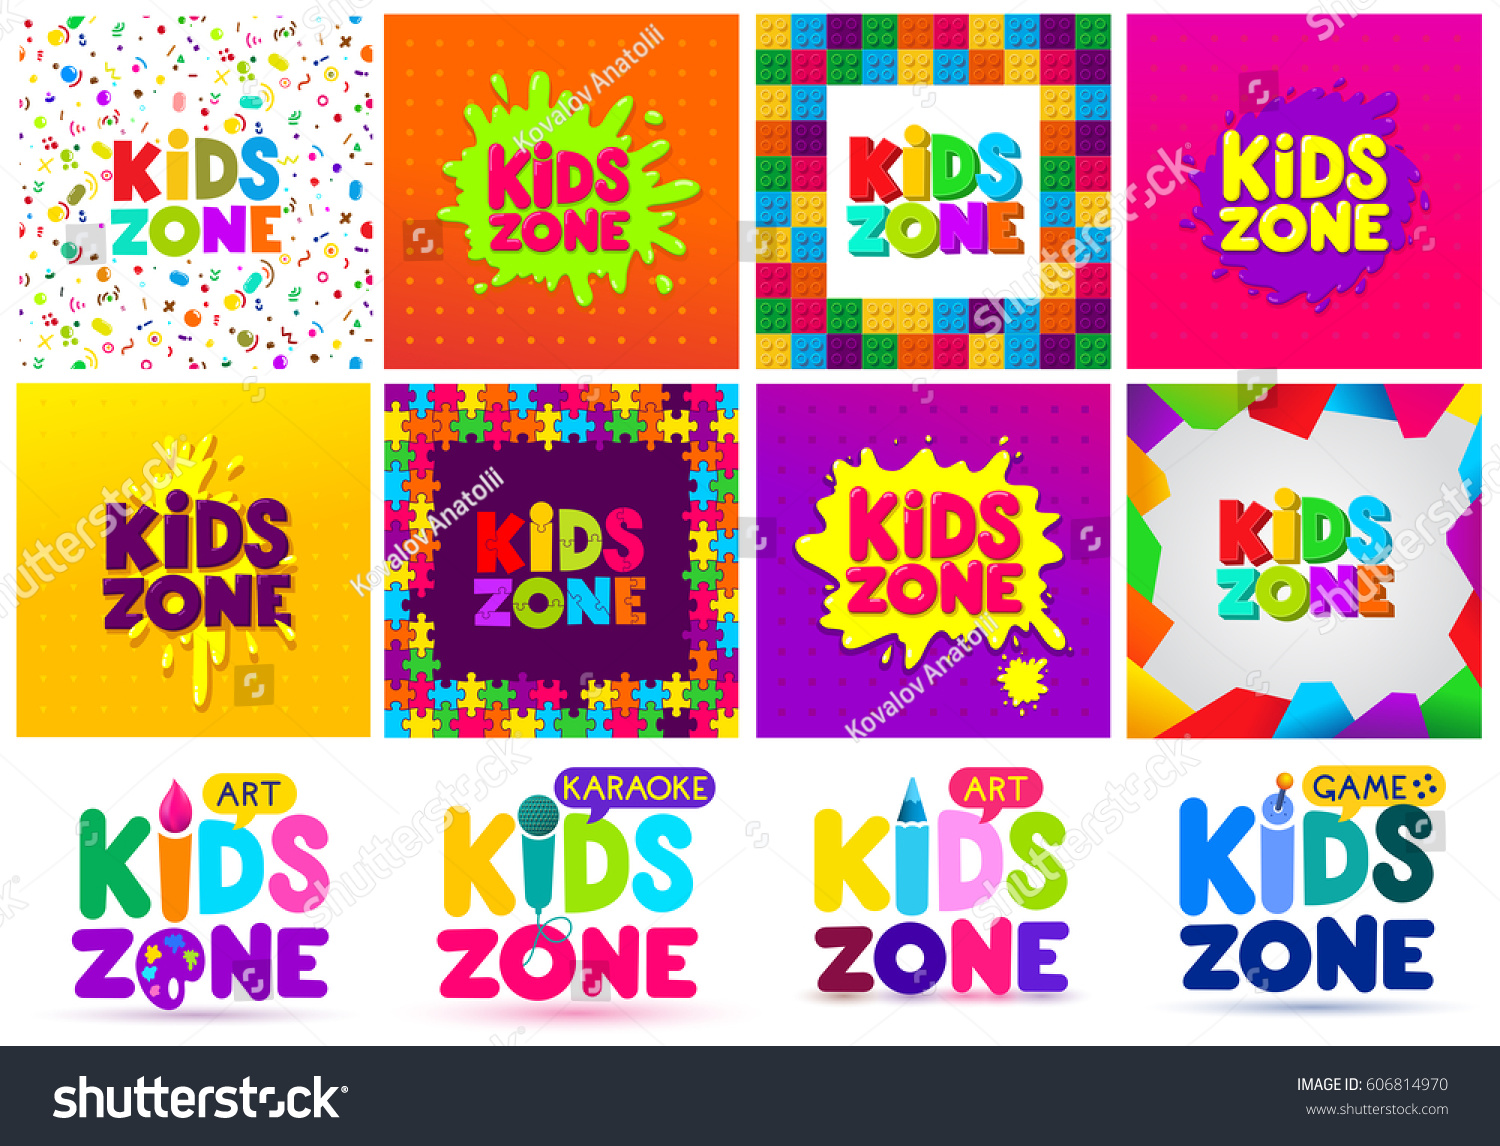  Kids Zone Banner Design Big Set Stock Vector 606814970 